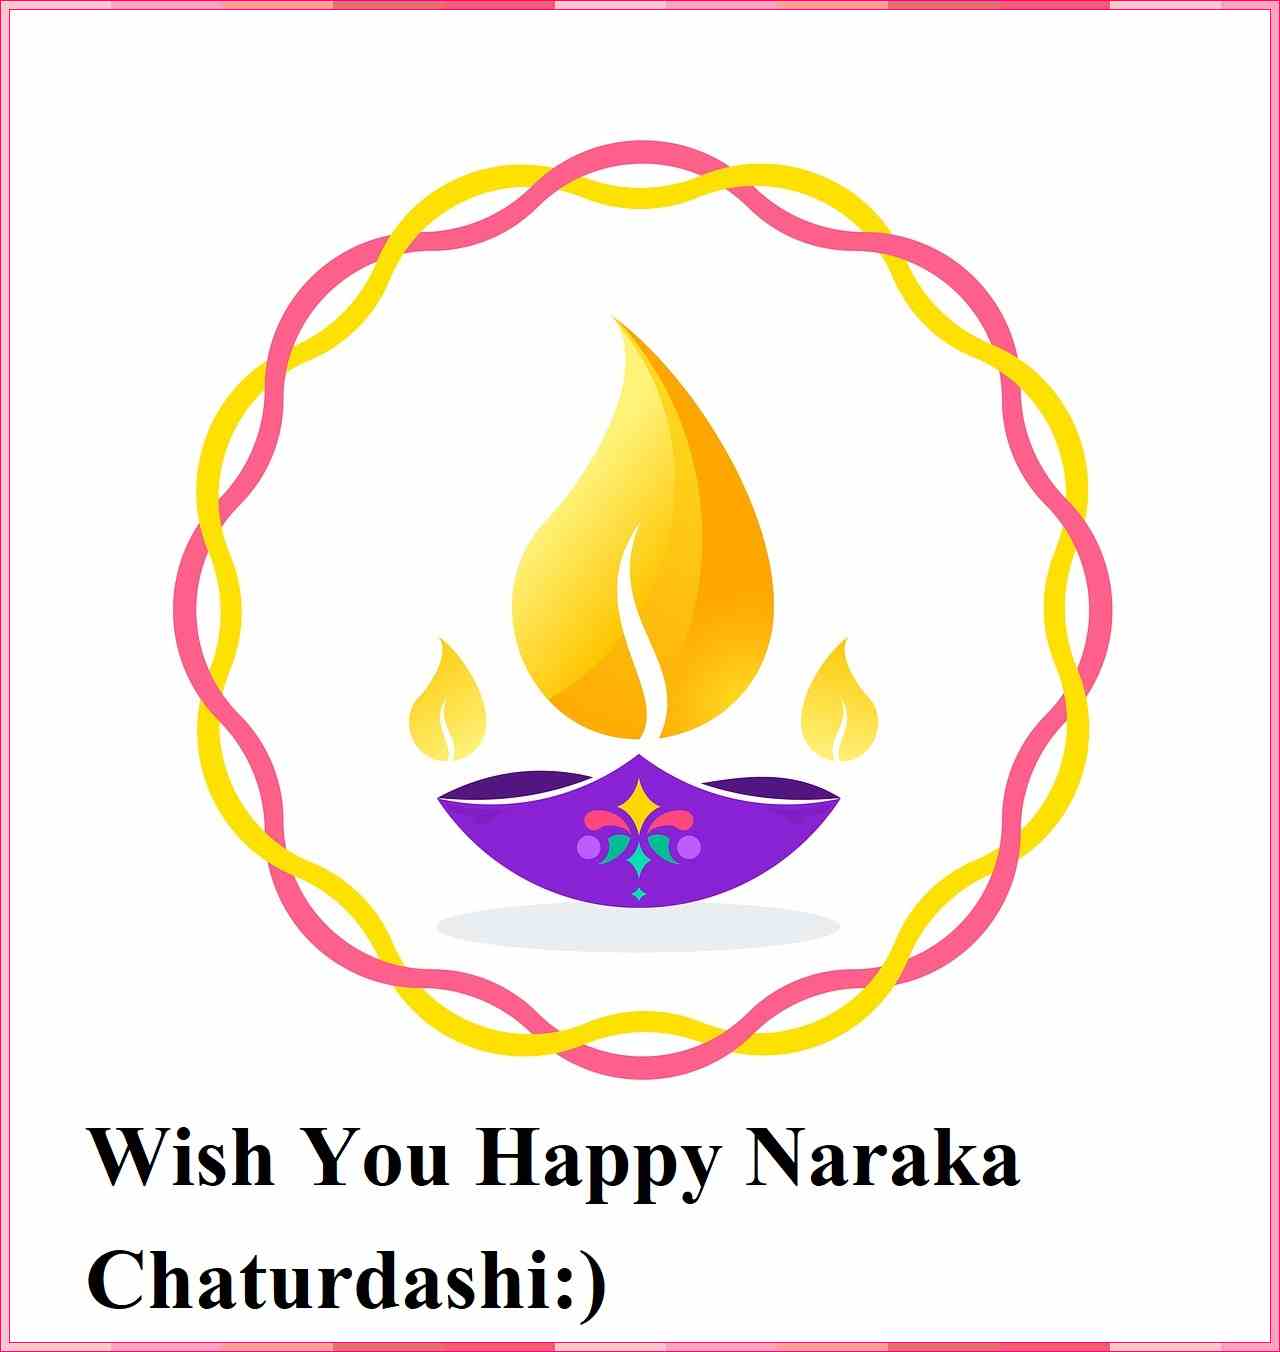 narak chaturdashi wishes in english

